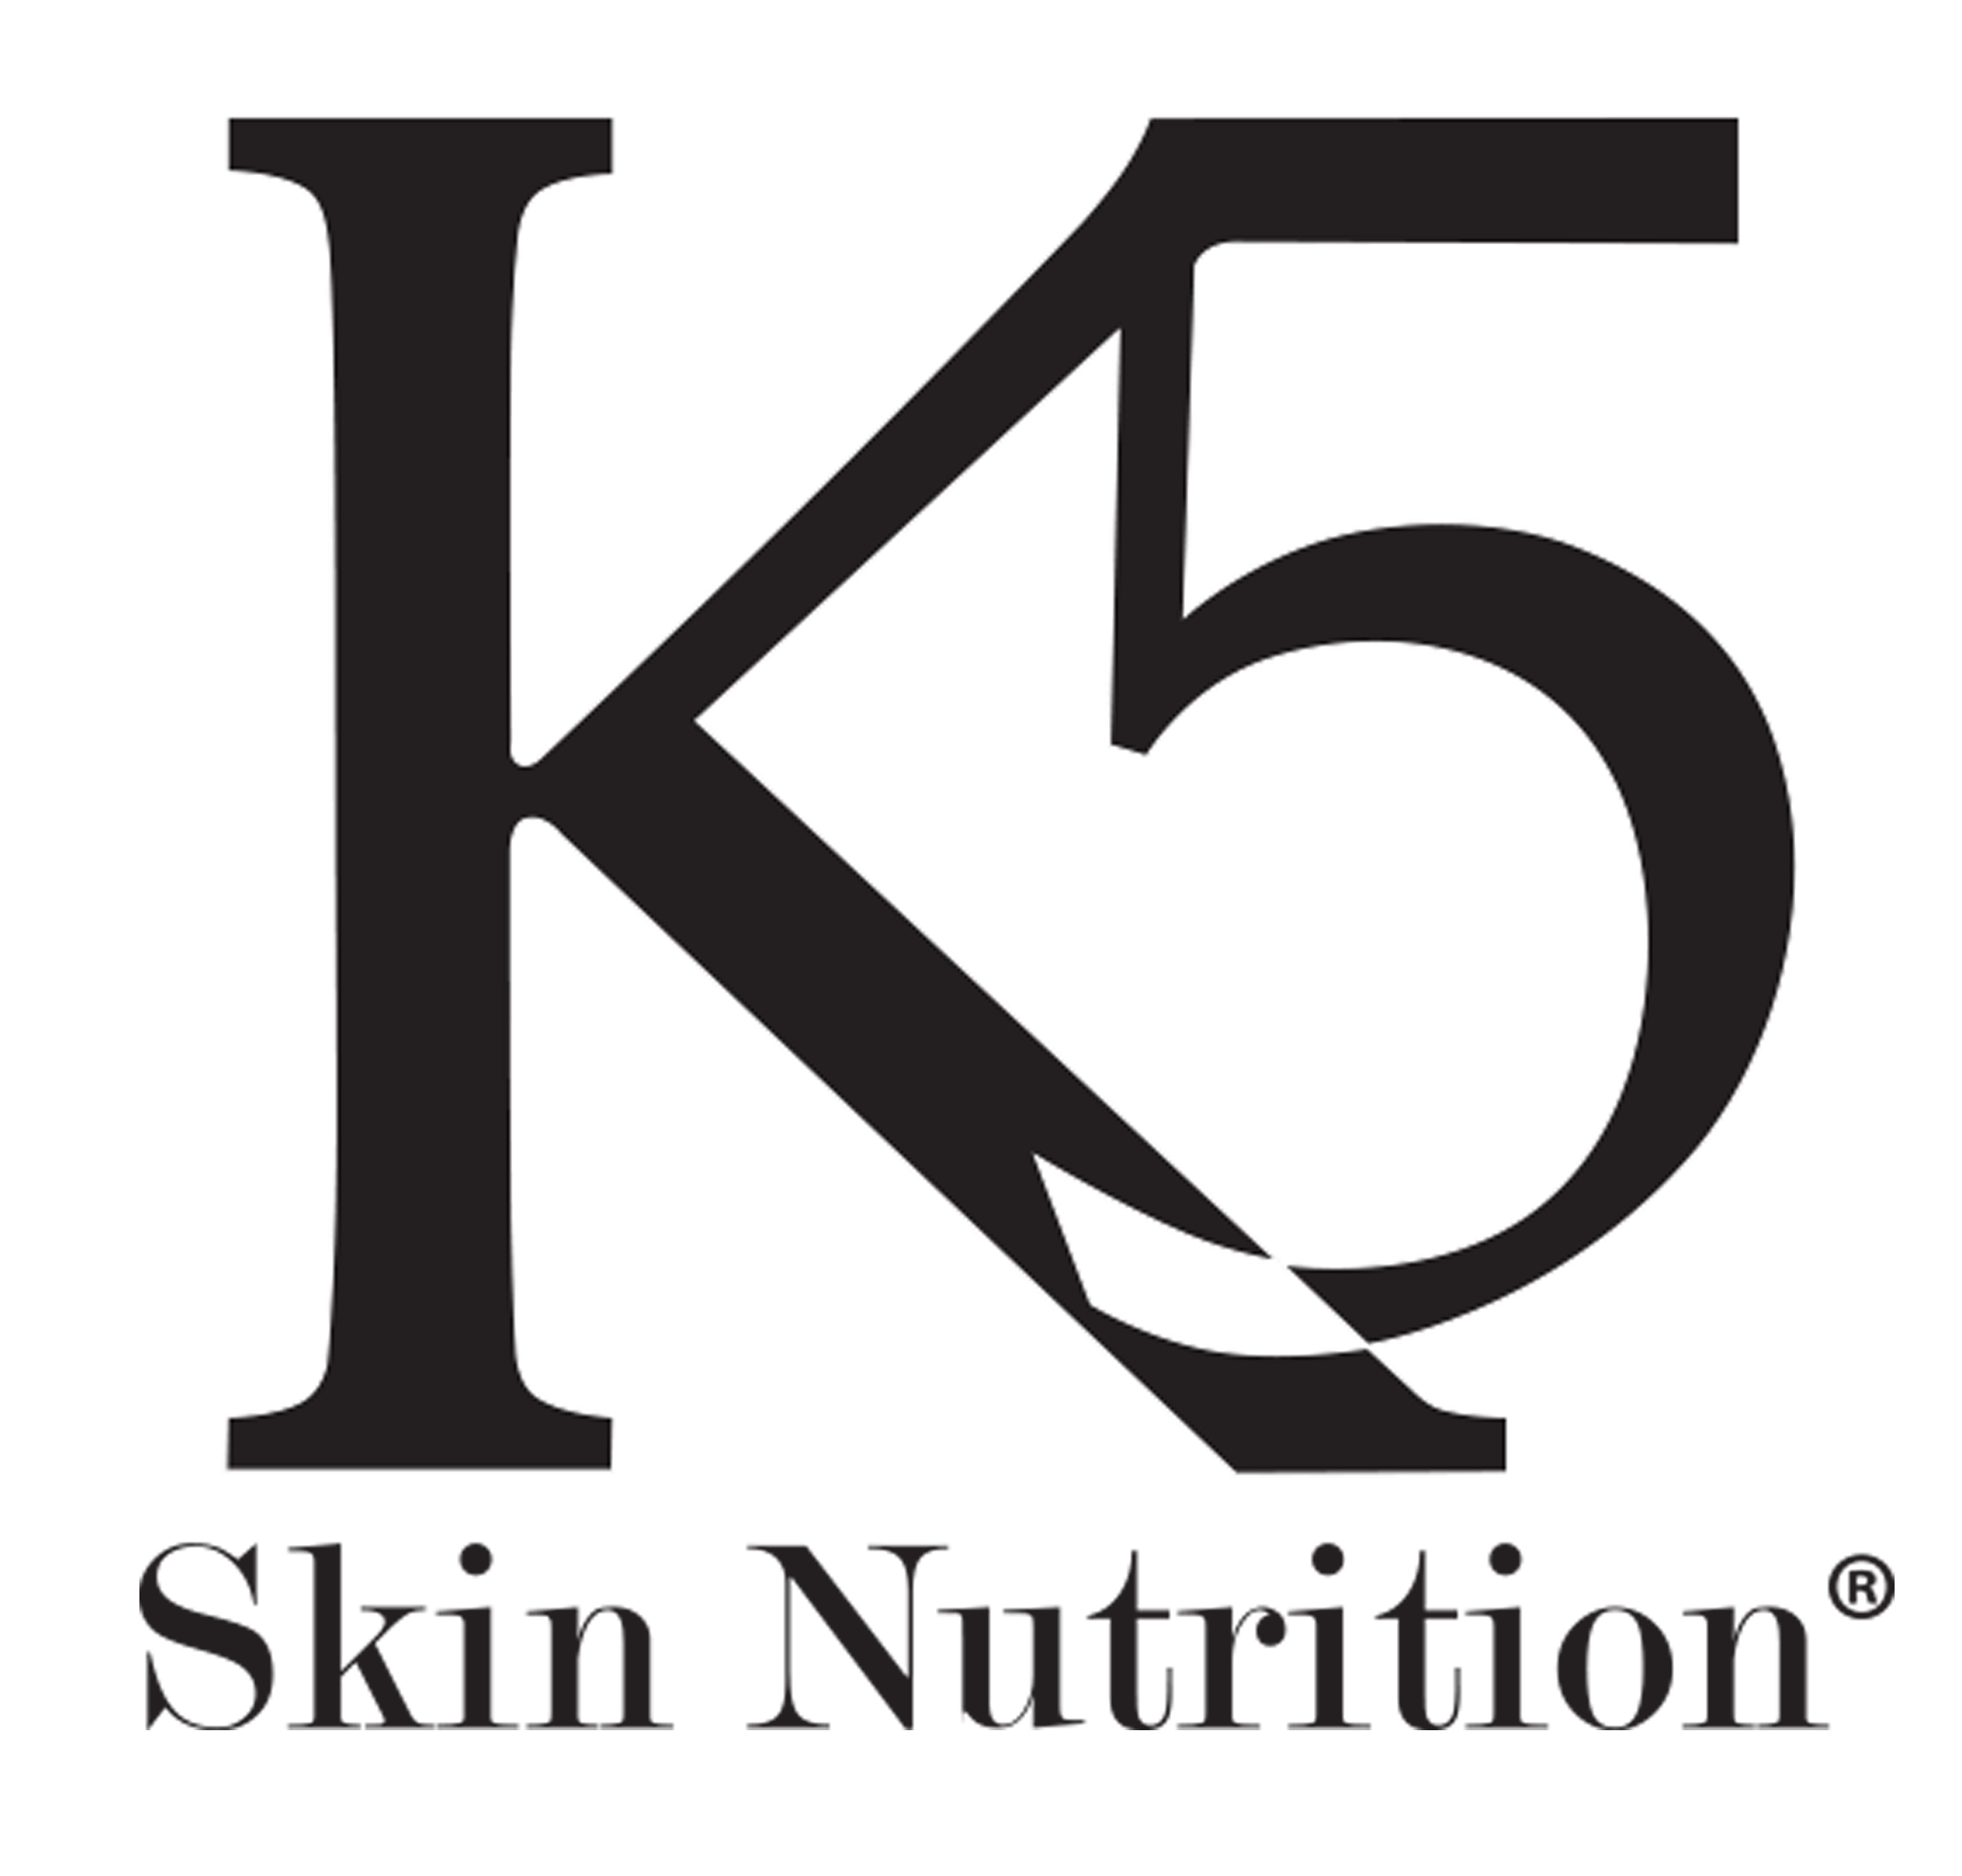 K5 Skin Nutrition - Healthy Skin is Beautiful Skin